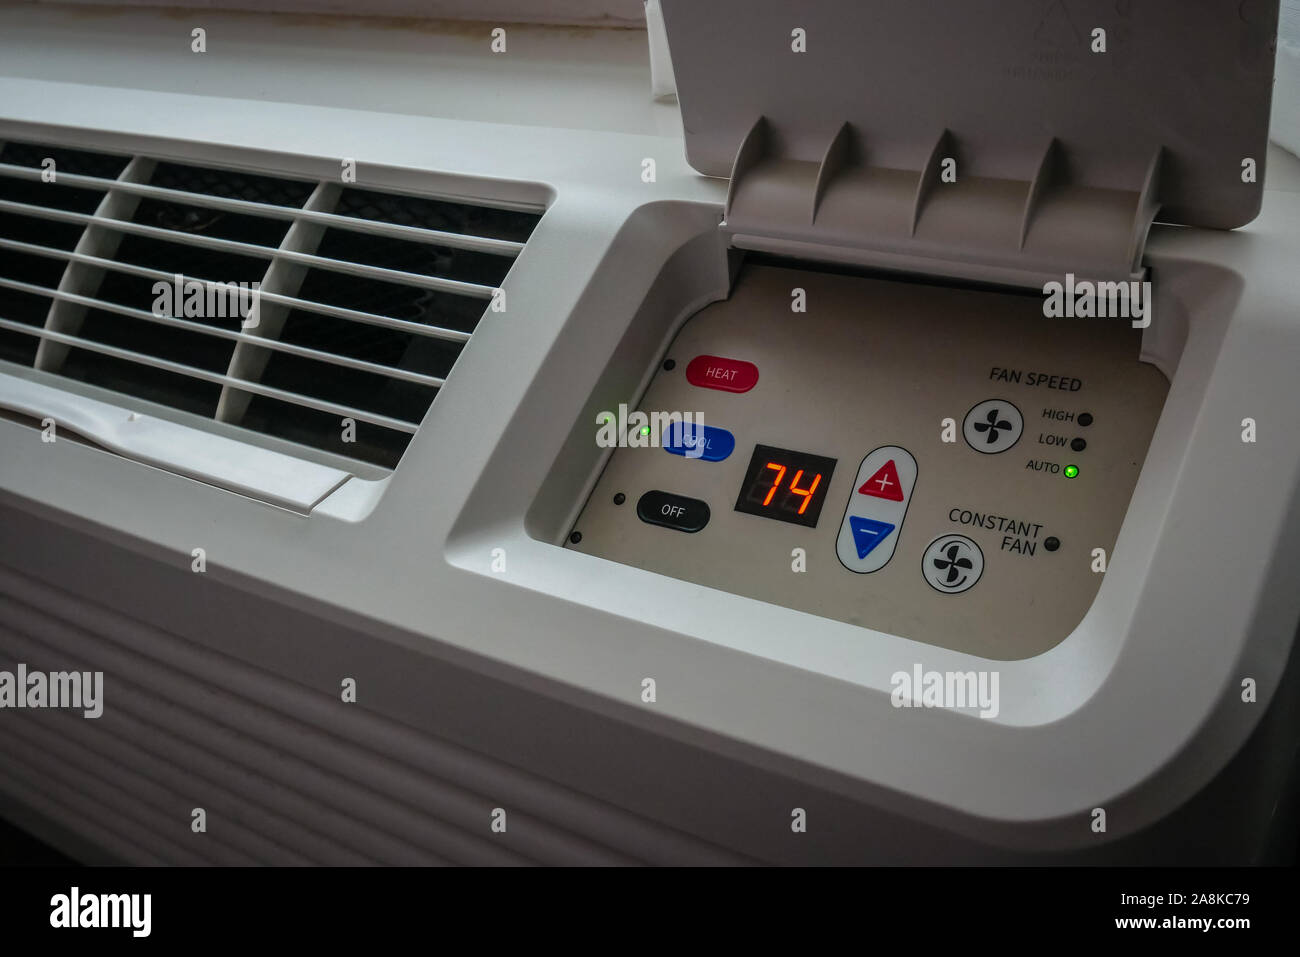 North American pannello di controllo temperatura fissata per il condizionatore d'aria in un hotel vecchio display camera 74F Foto Stock